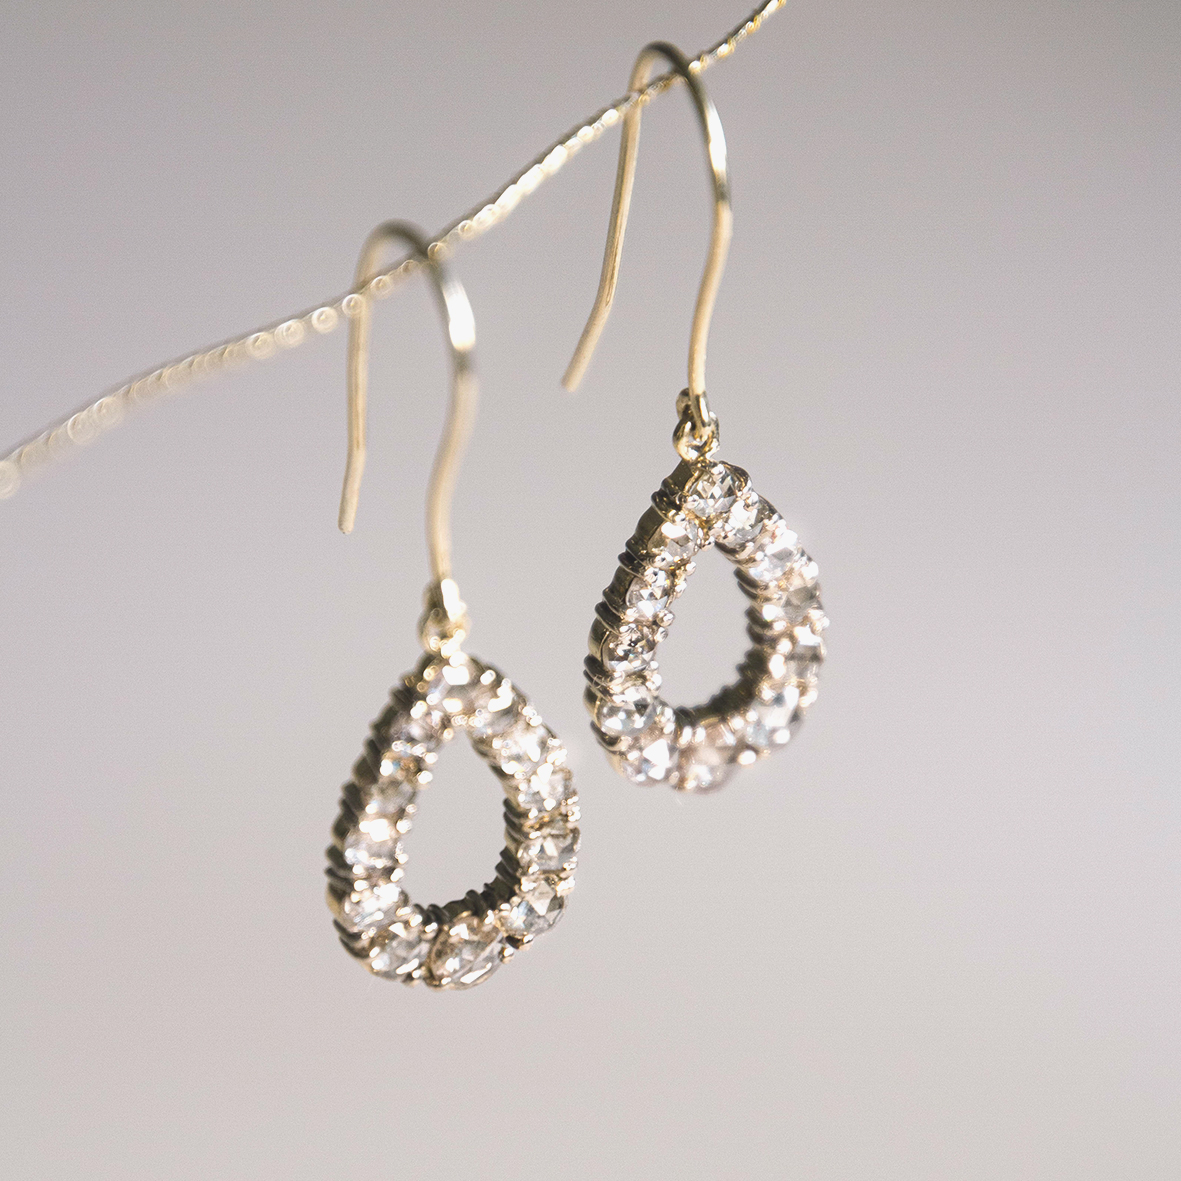 2. Drop diamond earrings_ppal